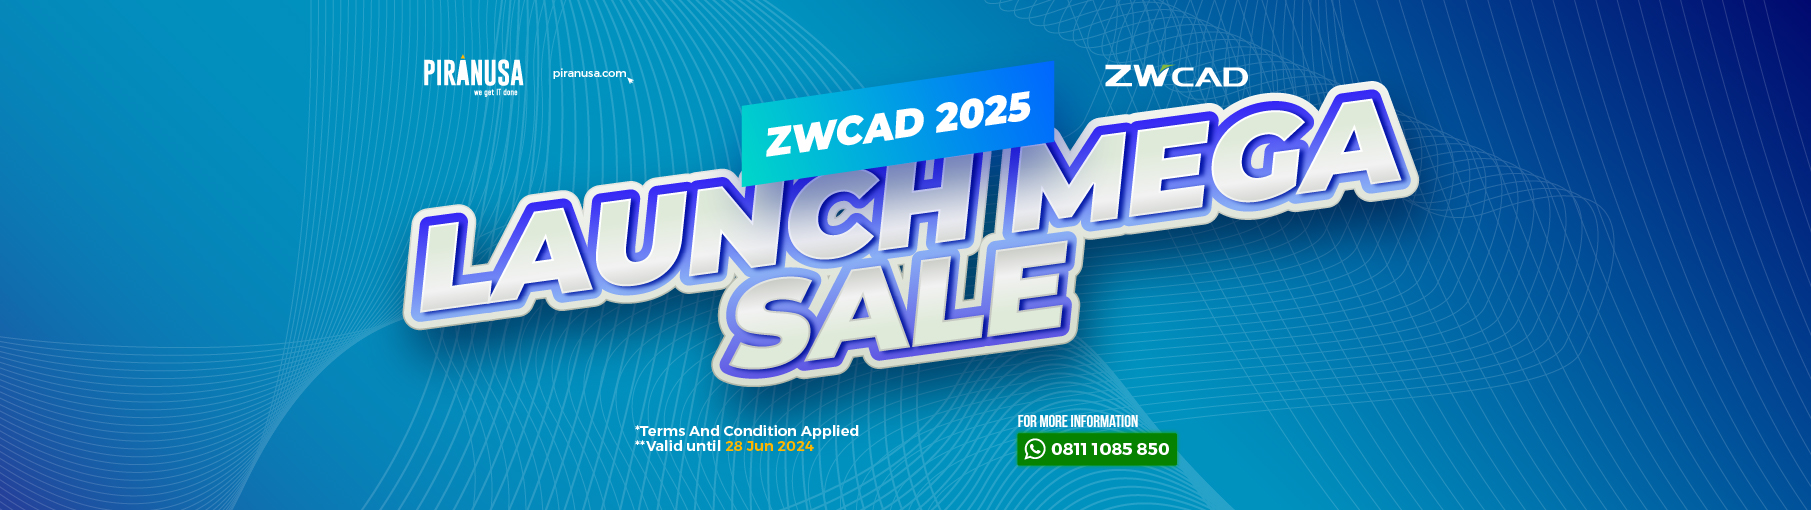 Banner ZWCAD 2025 Launch Mega Sale